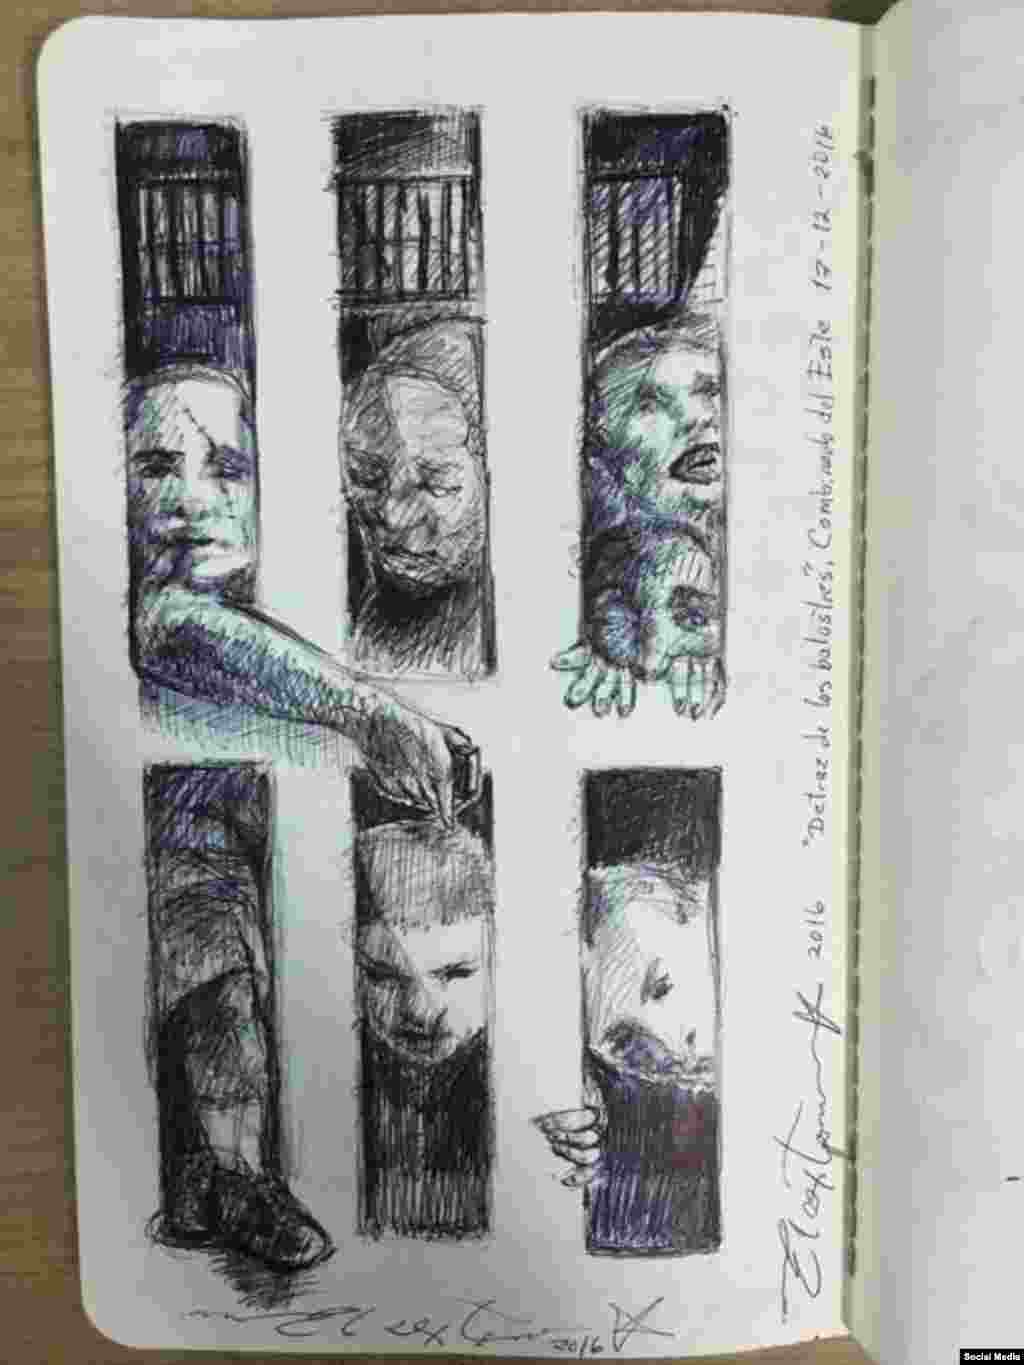 Dibujos de El Sexto en prisión, diciembre 2016. Tomado de la cuenta de Facebook Danilo Maldonado Machado.